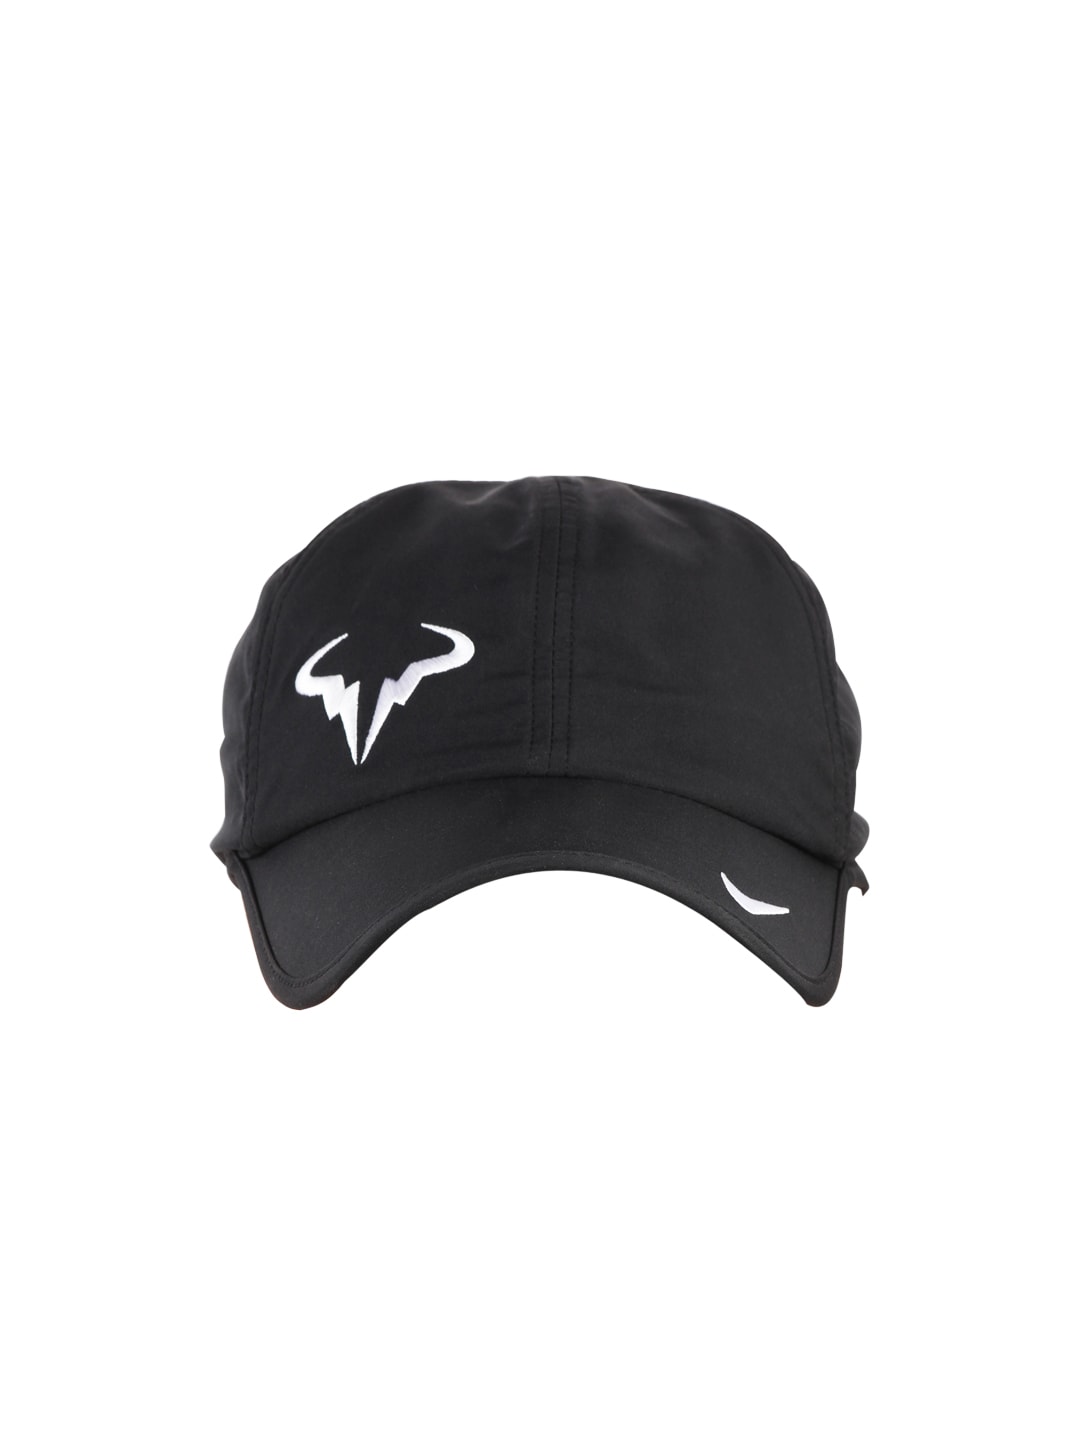 Nike Unisex Black Cap